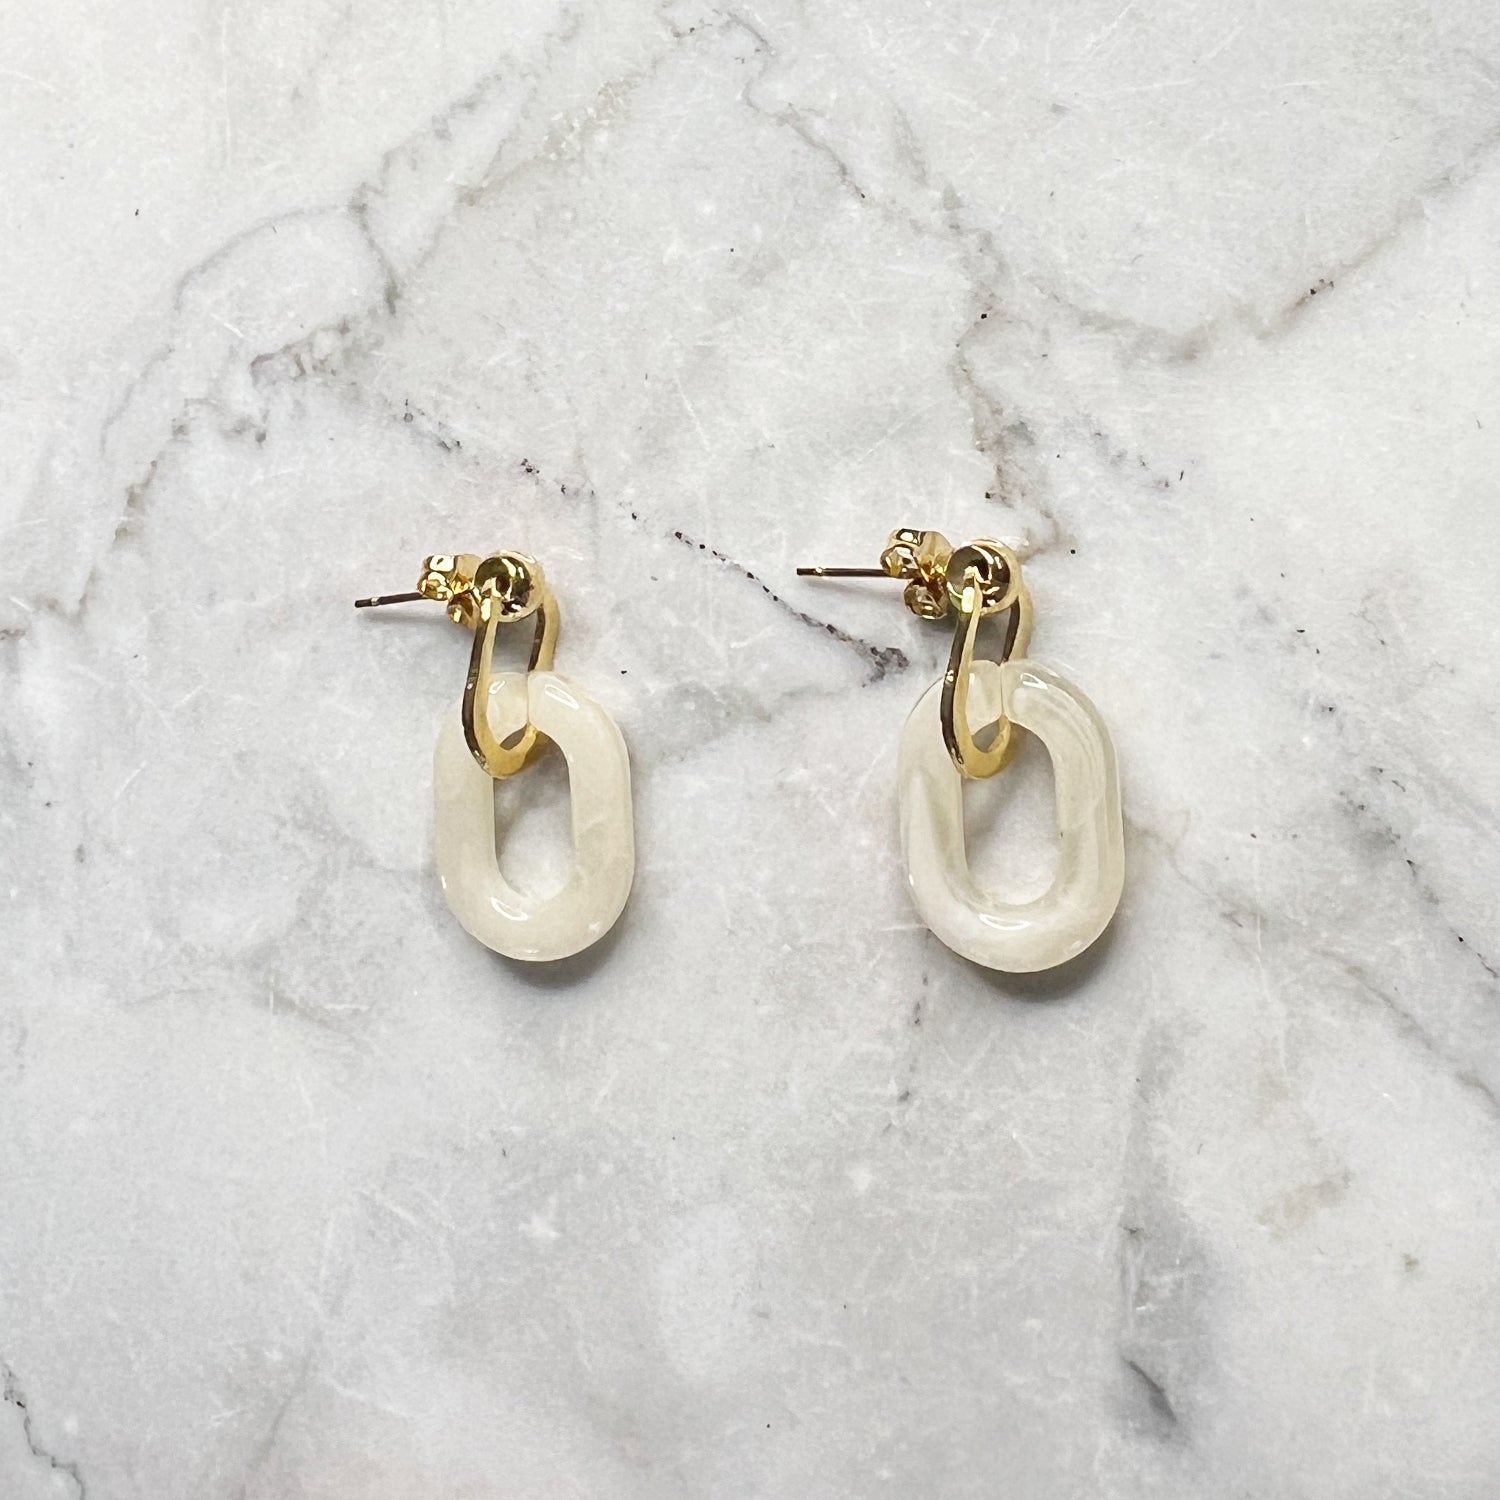 Gouden oorbellen met een beige ovale hanger er aan. De oorbellen zijn van gold plated stainless steel materiaal en zijn waterproof.   Afmetingen: 3 cm 